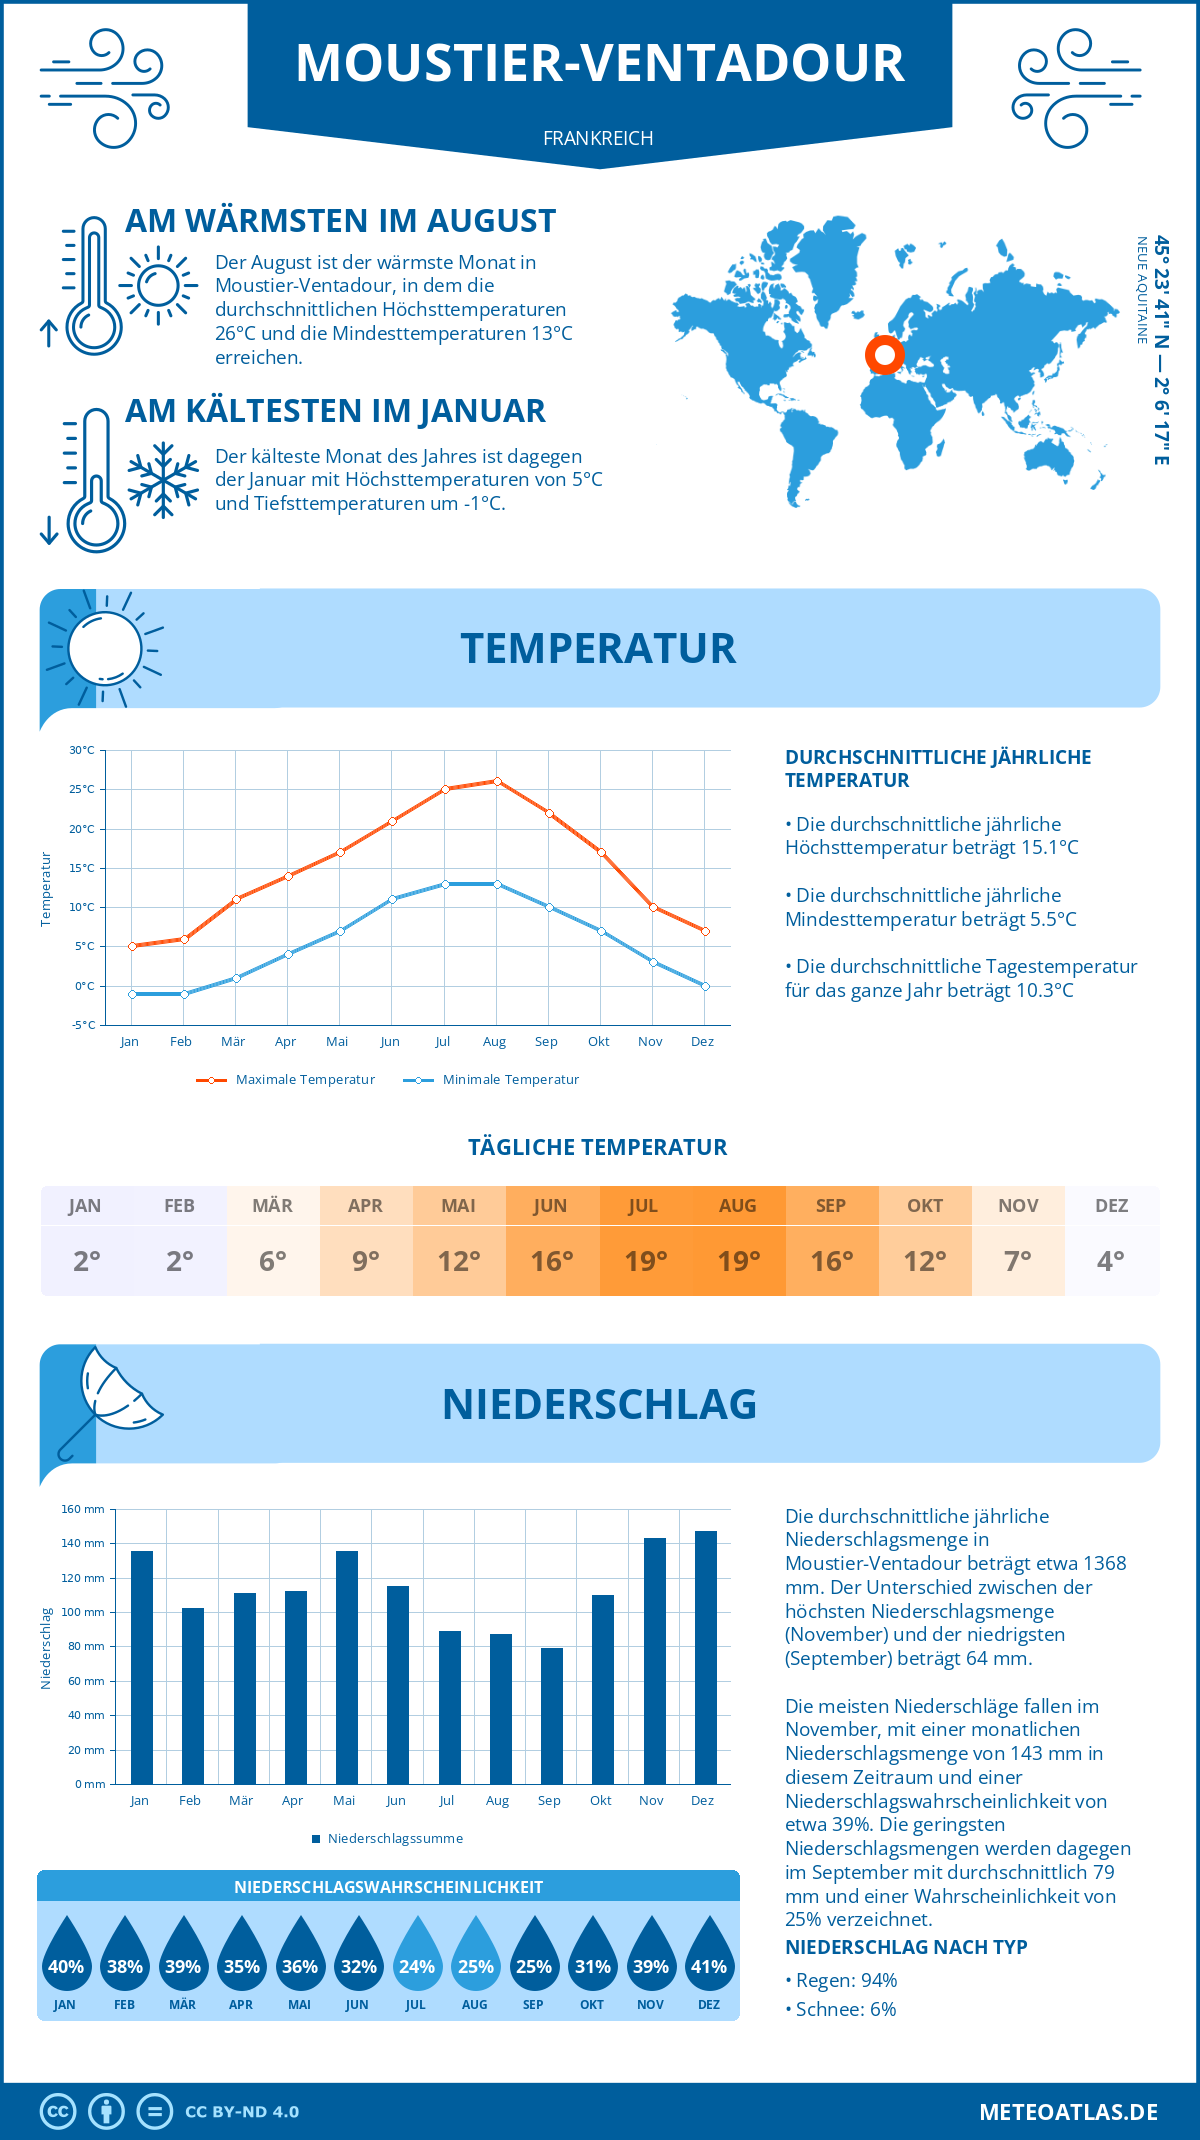 Wetter Moustier-Ventadour (Frankreich) - Temperatur und Niederschlag